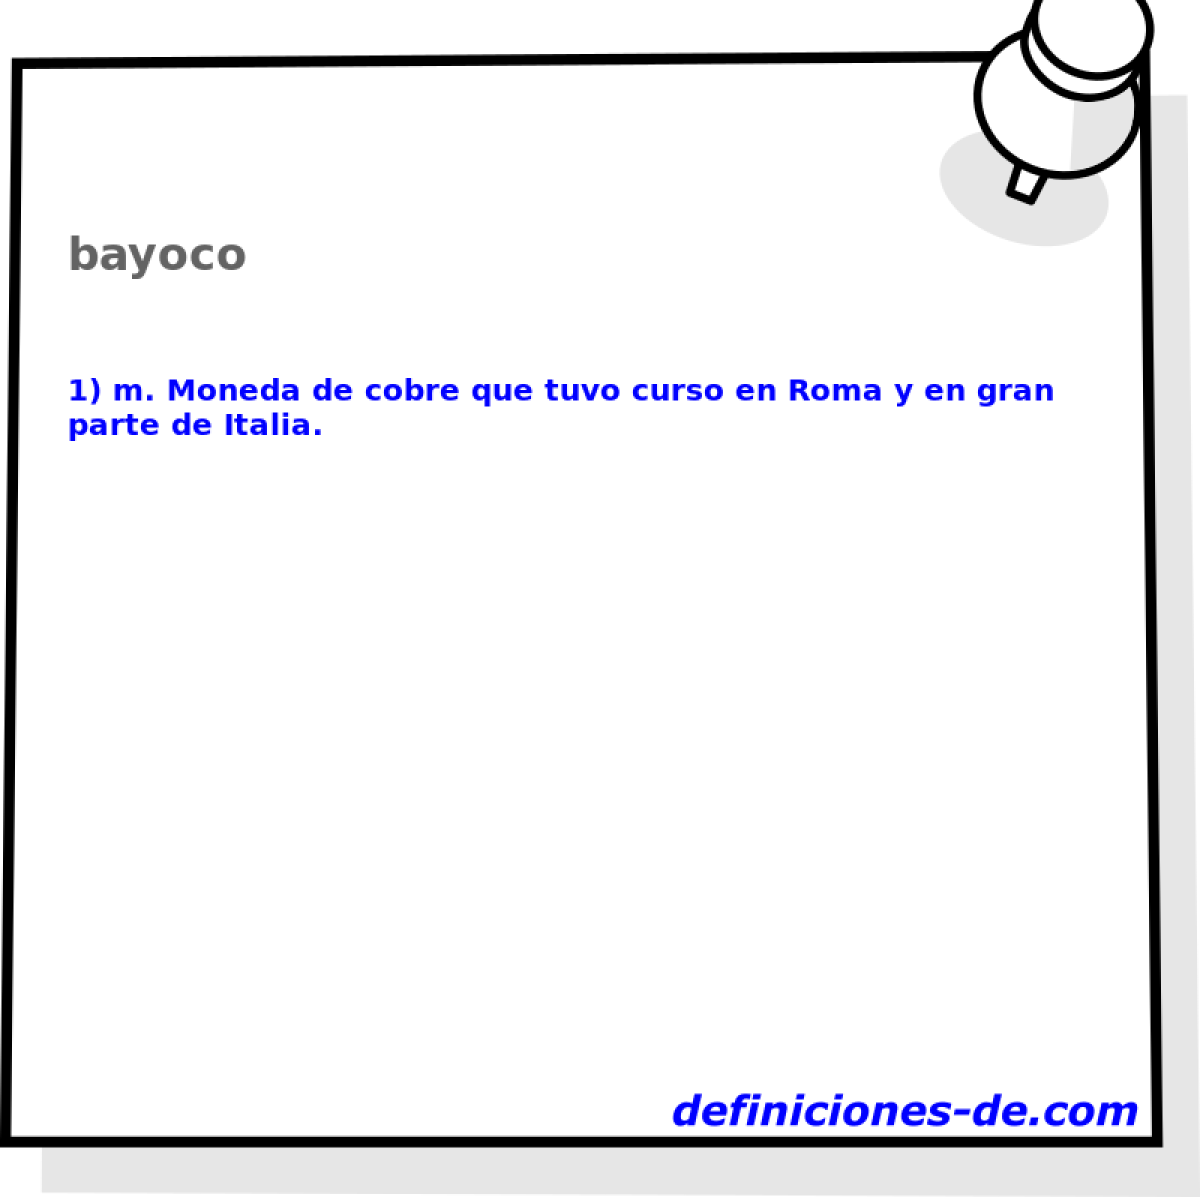 bayoco 